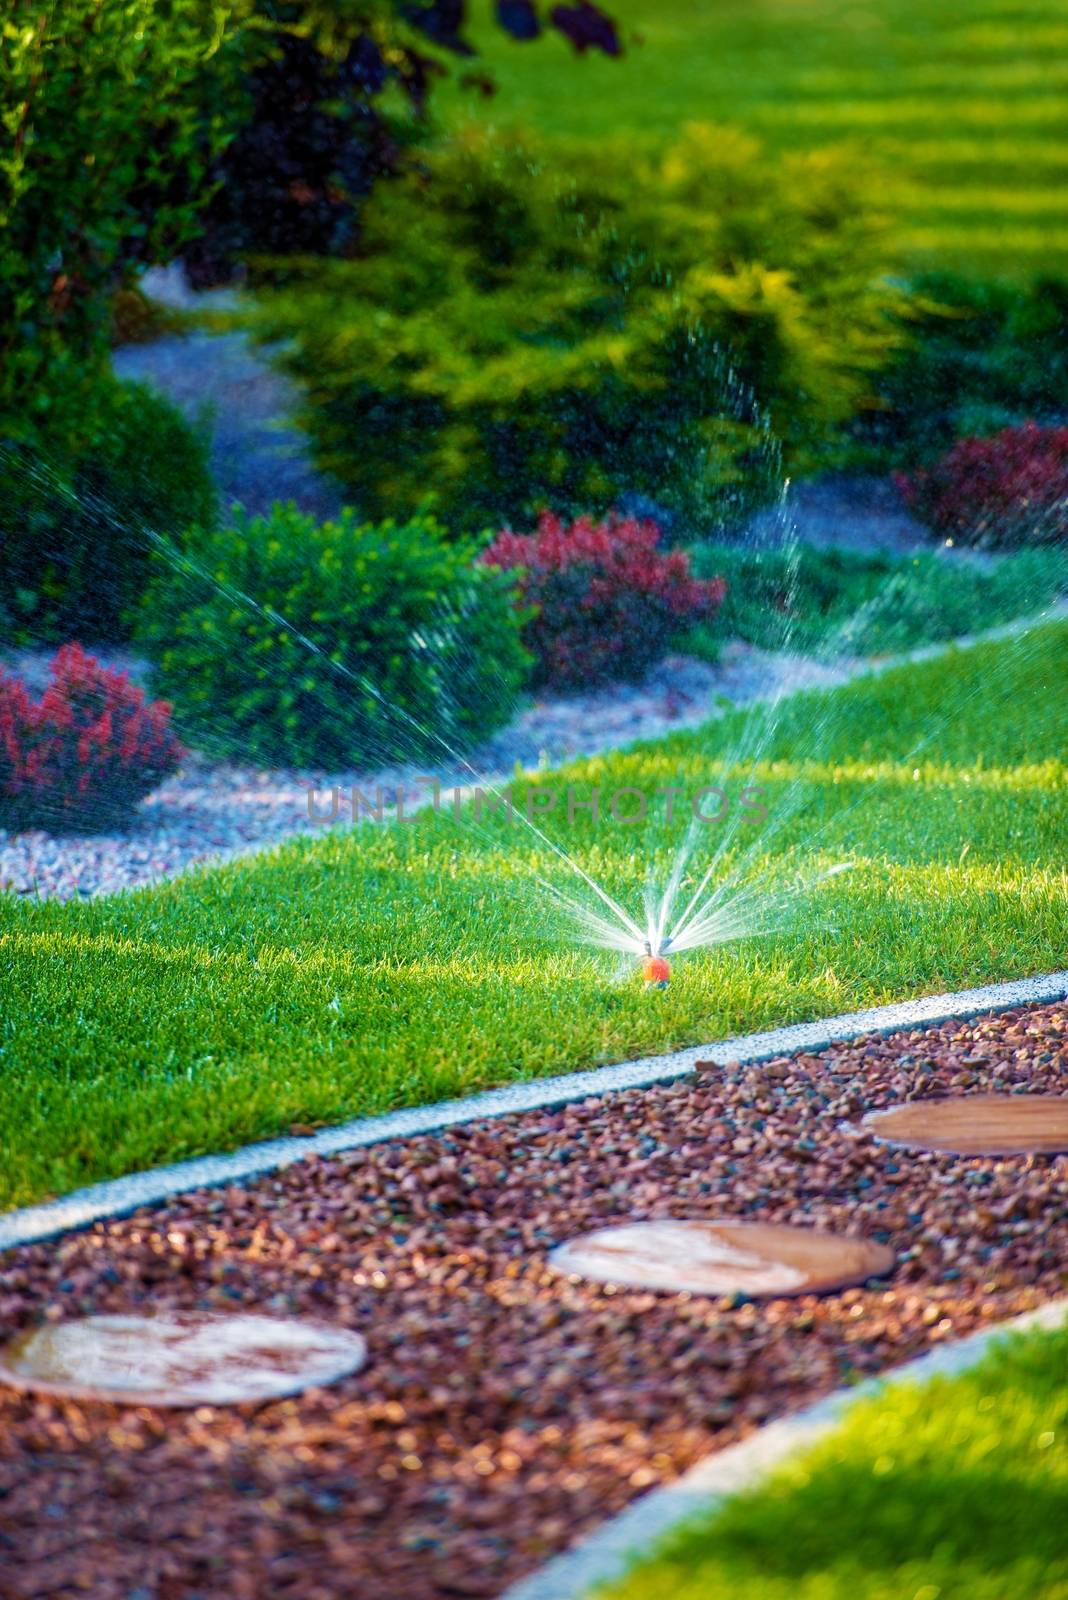 Backyard Garden Watering by welcomia